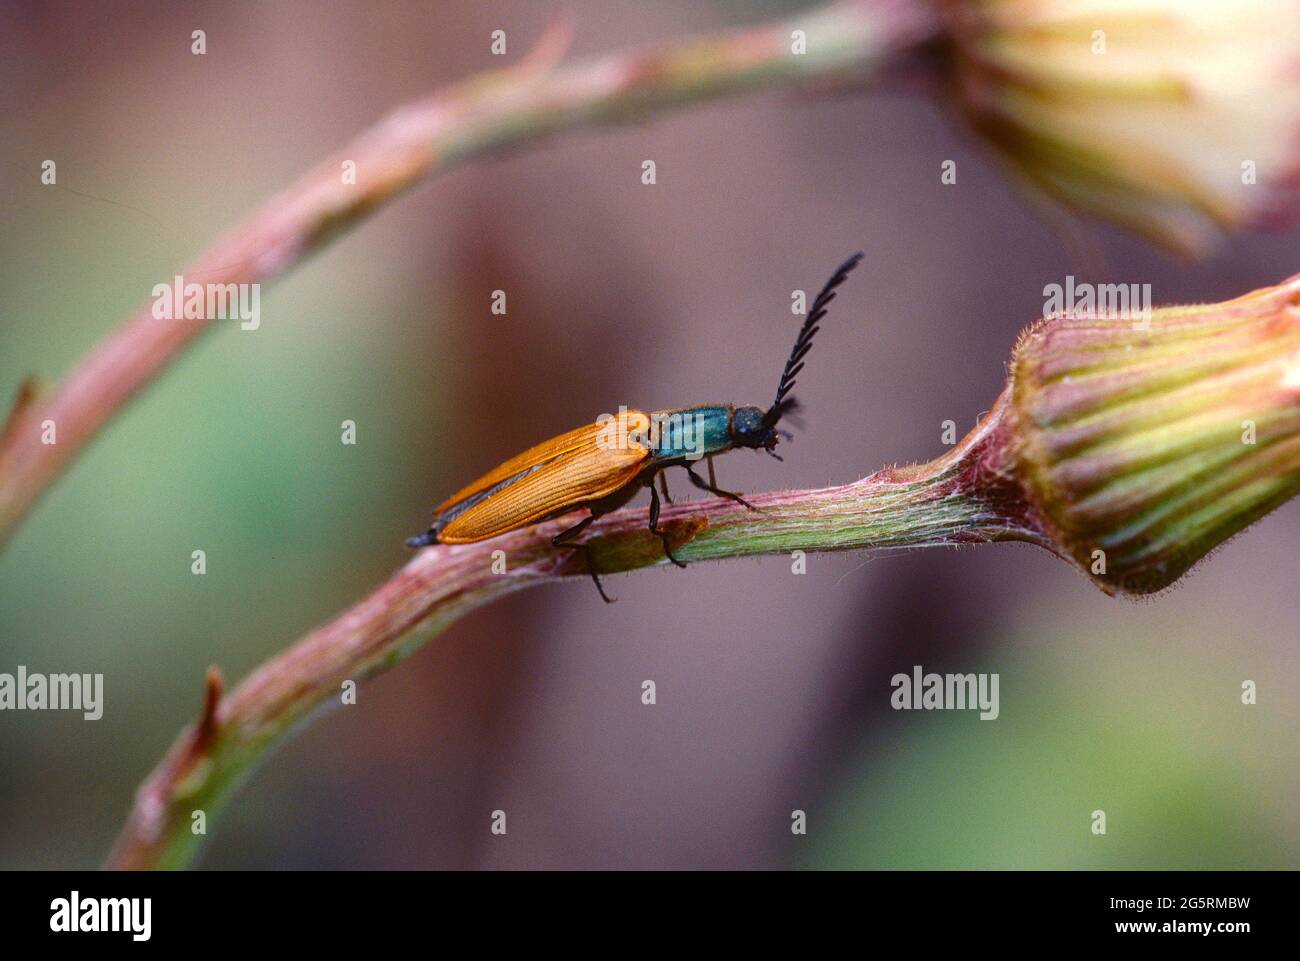 Schnellkäfer, Plastocerus angulosus, Elateridae, Käfer, Insekt, Tier, Kanton Zürich, Schweiz Stock Photo